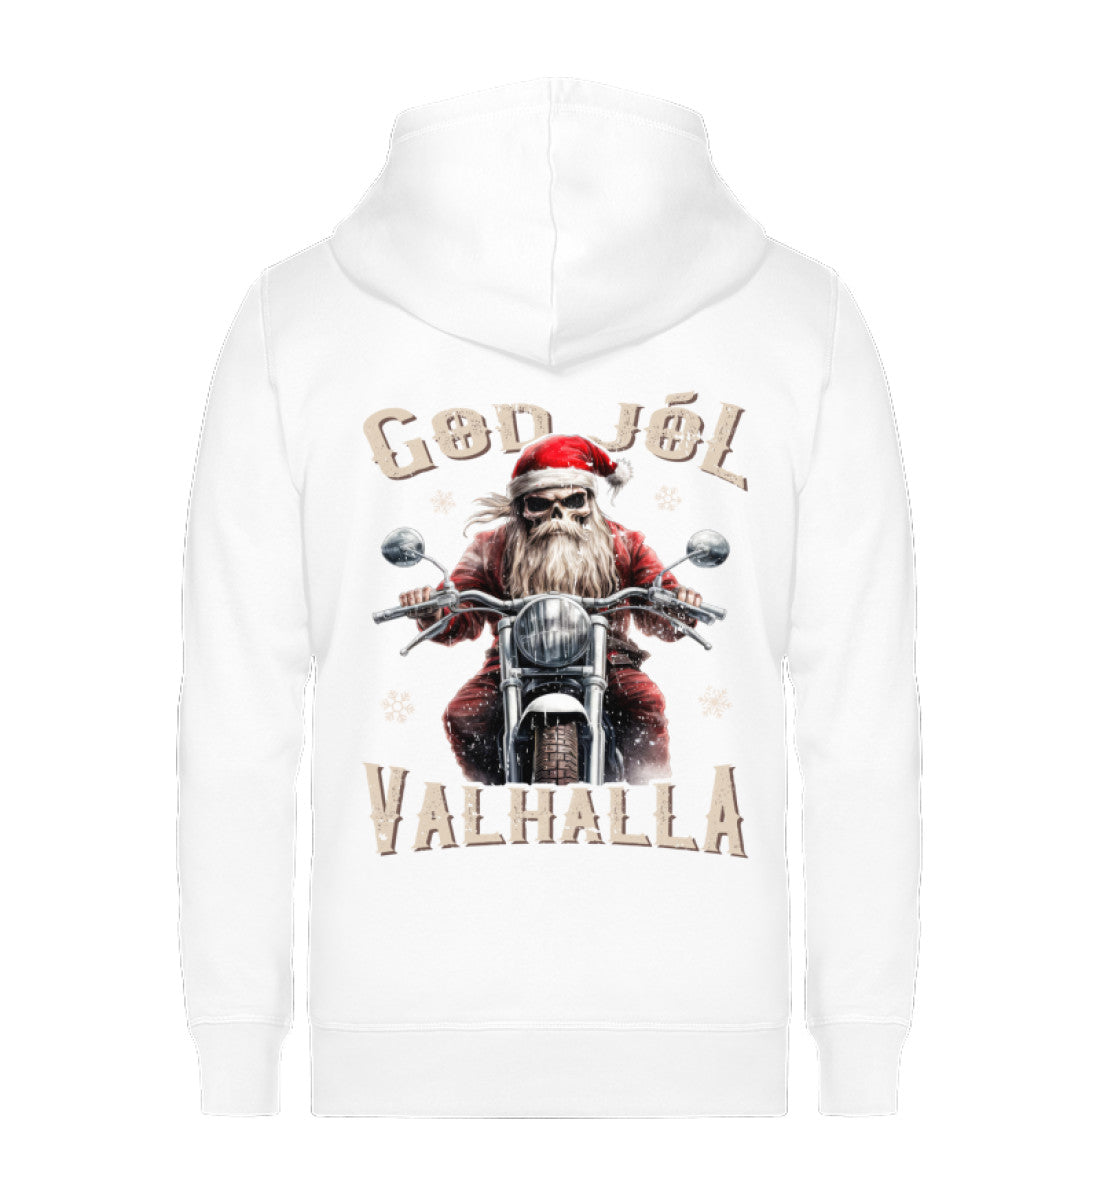 Ein weihnachtliches Biker Zip-Jacke für Motorradfahrer von Wingbikers mit dem Aufdruck, God Jól Valhalla, mit Back Print - in weiß.